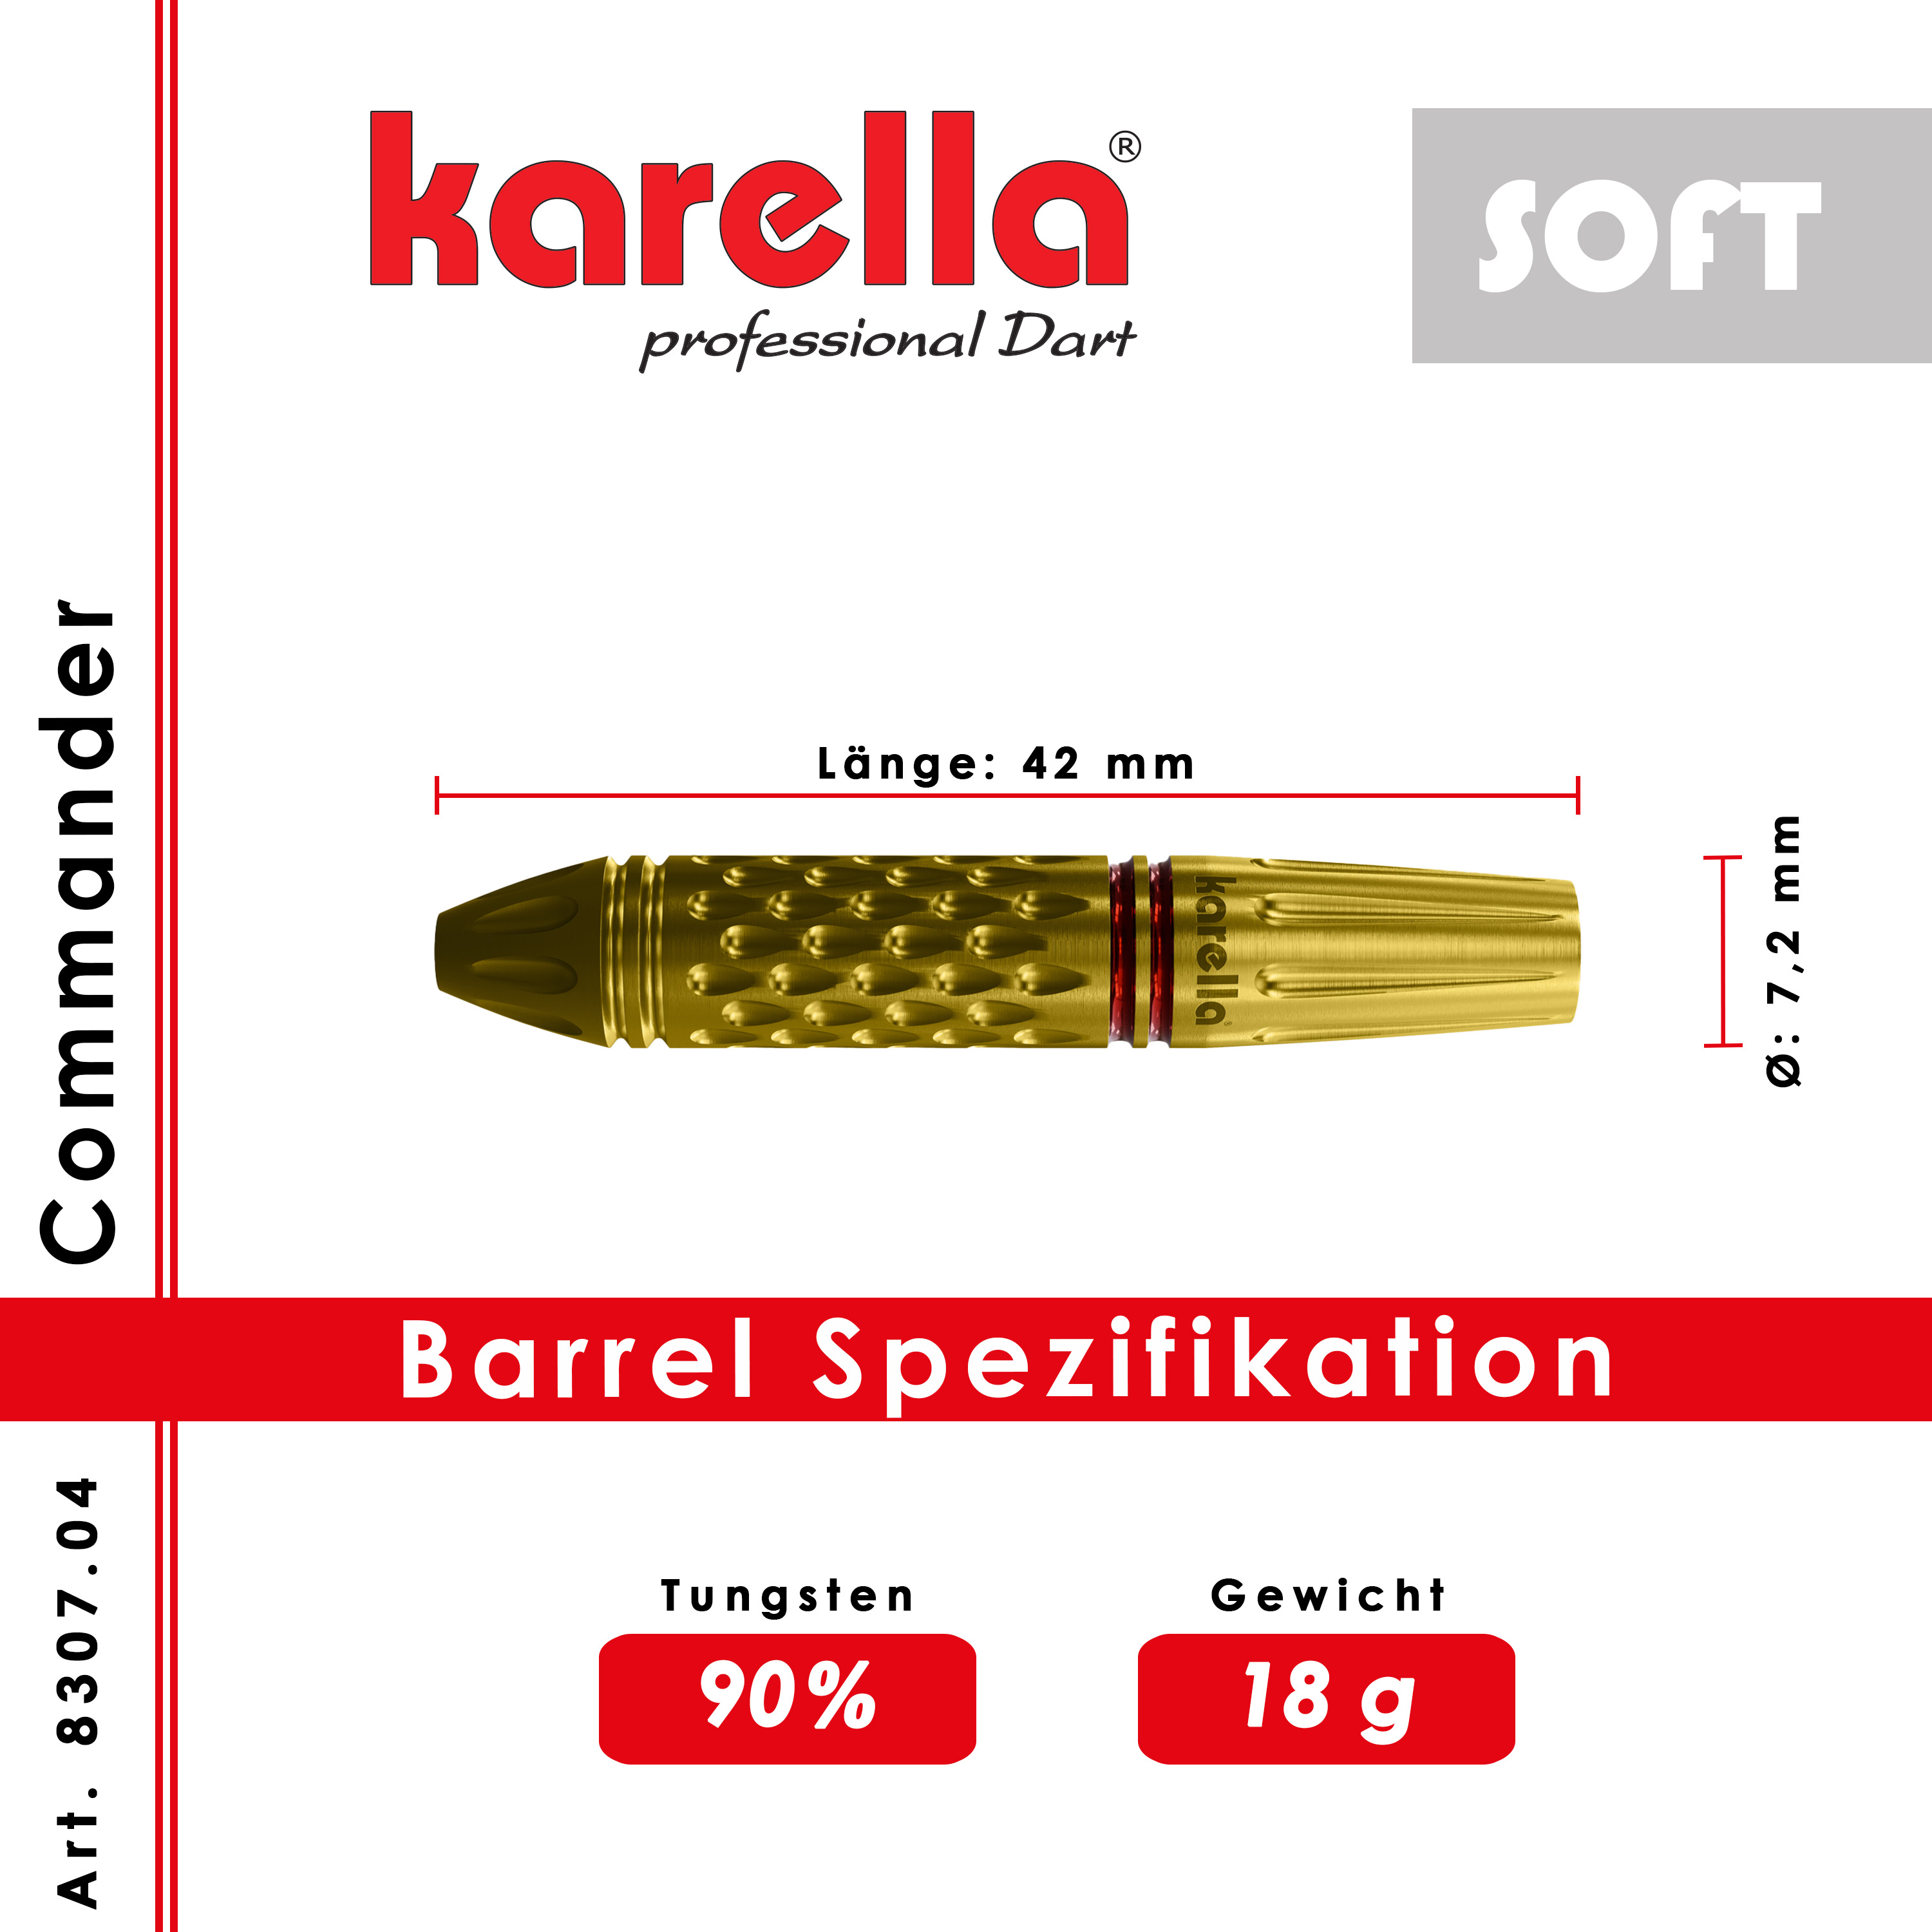 Softdart Karella Commander Gold 90% Tungsten 18 g or 20 g